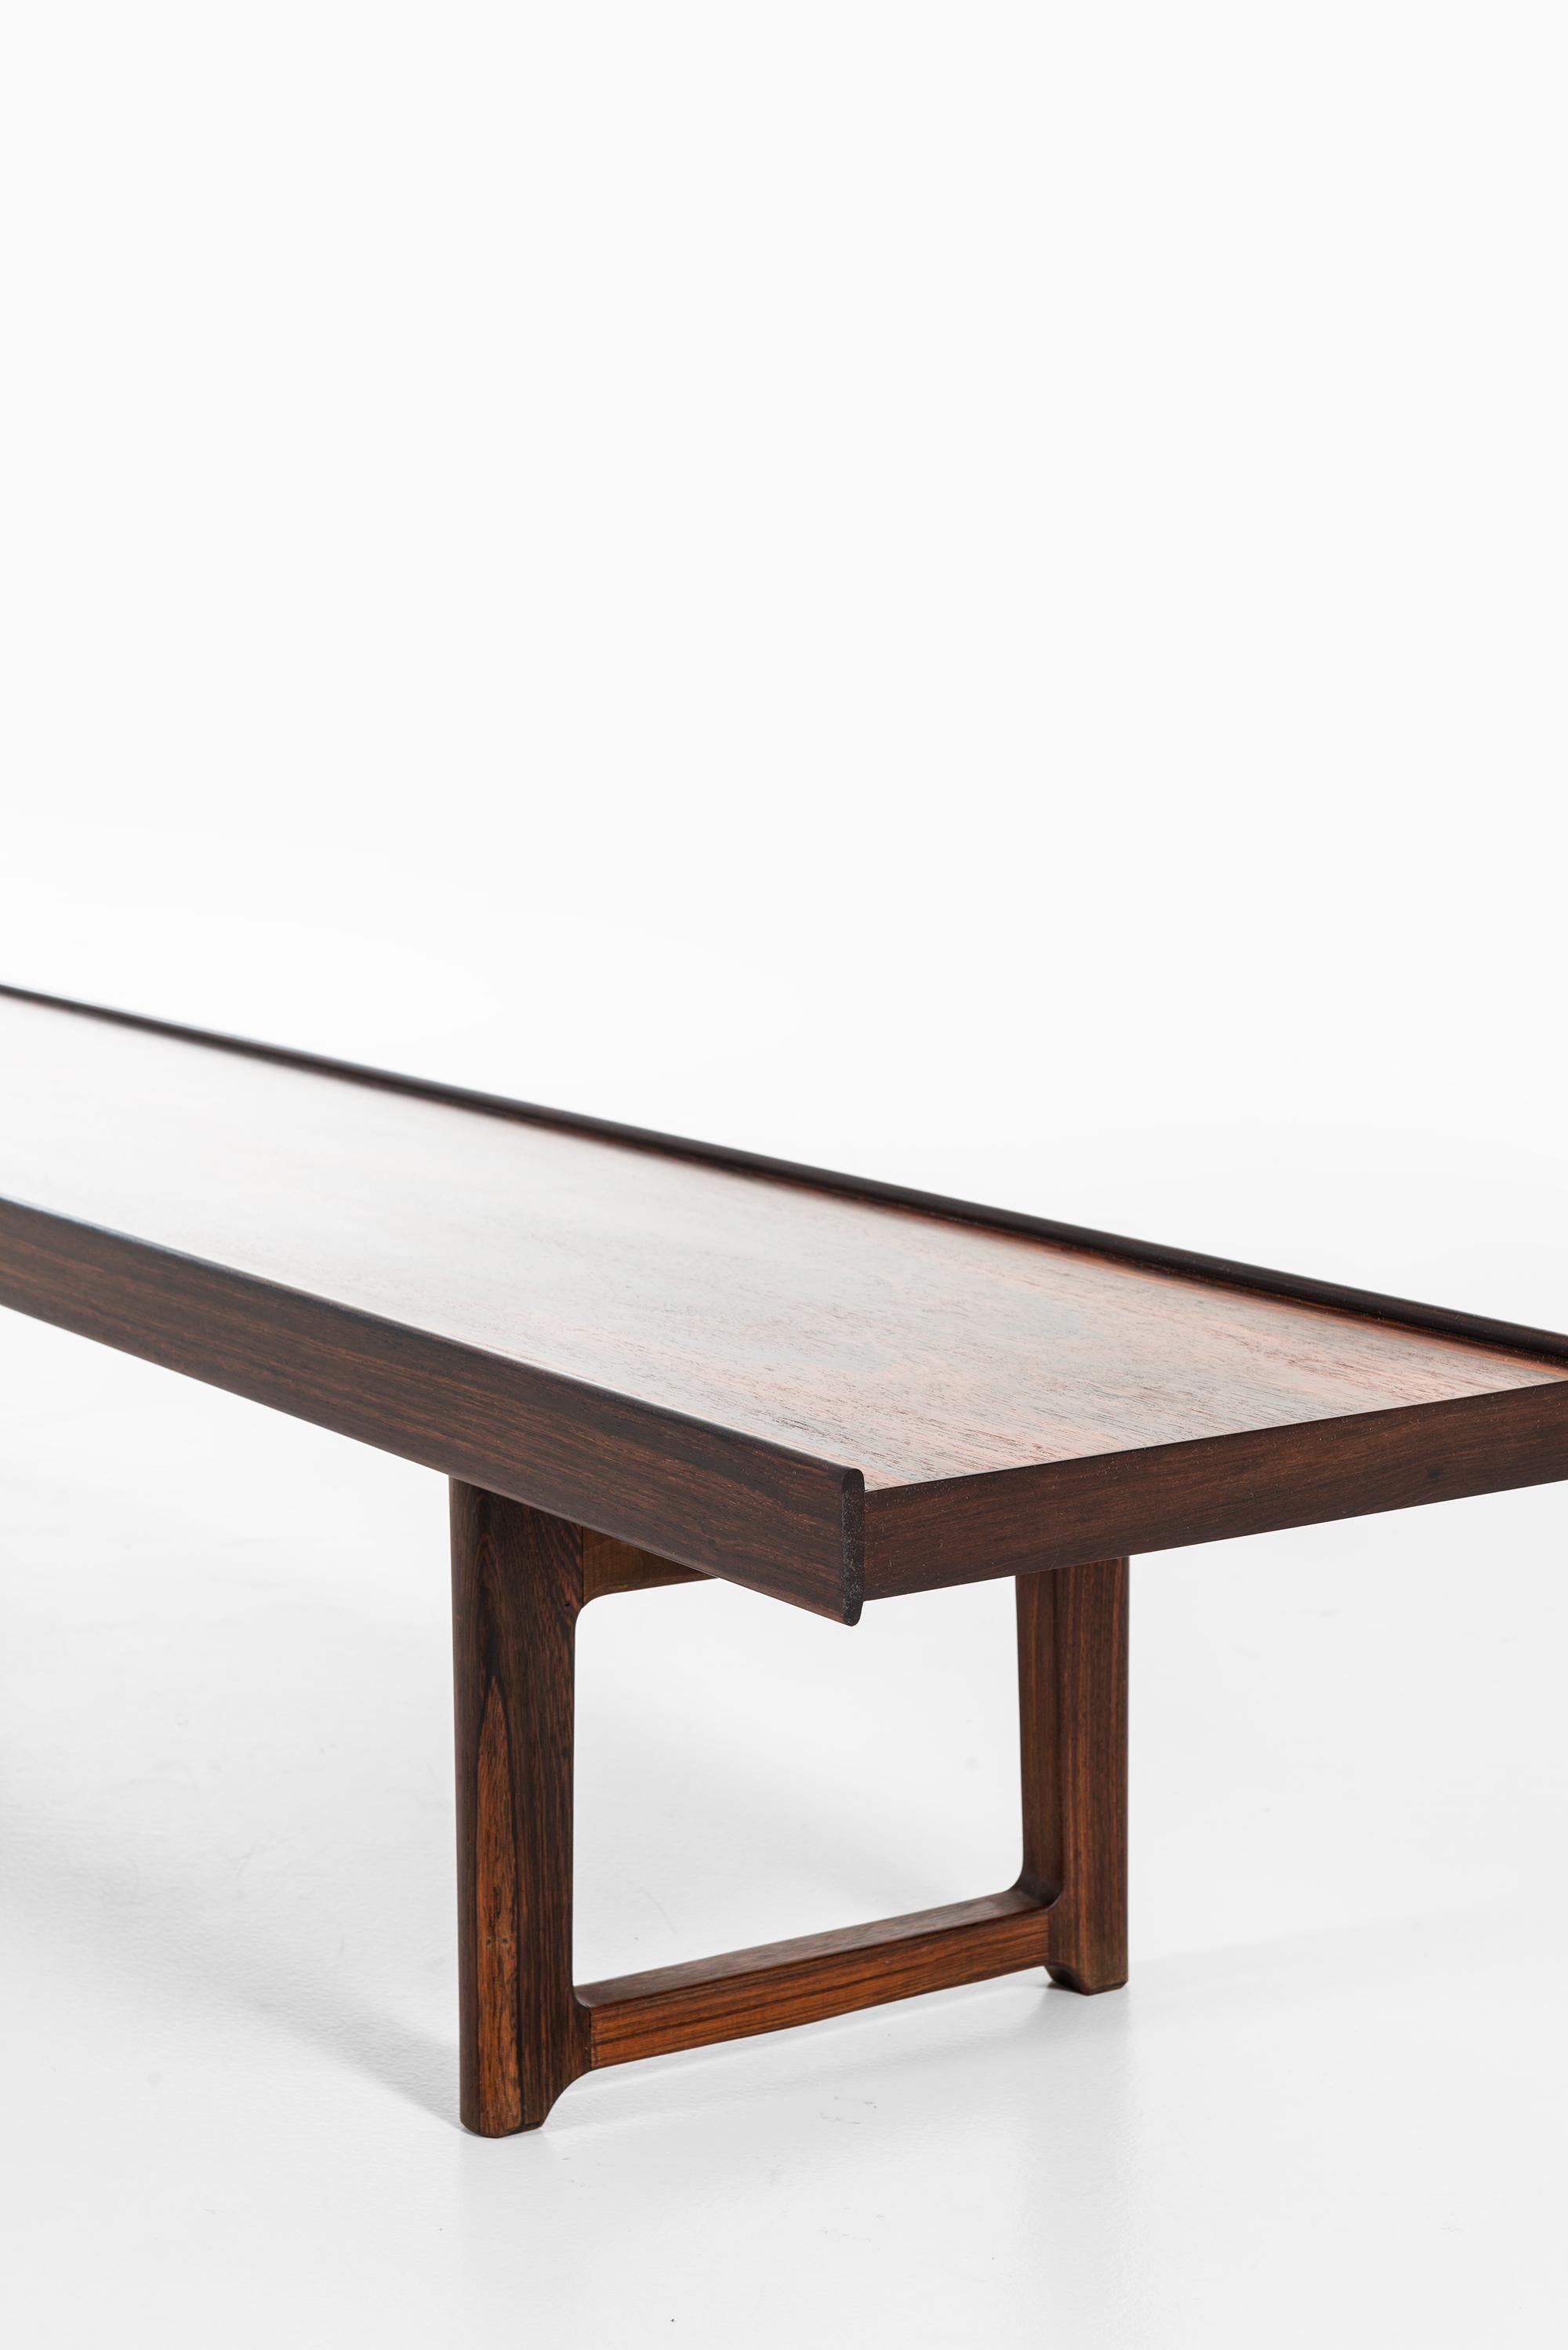 Rosewood Torbjørn Afdal Side Table / Bench Model Krobo Produced in Norway For Sale